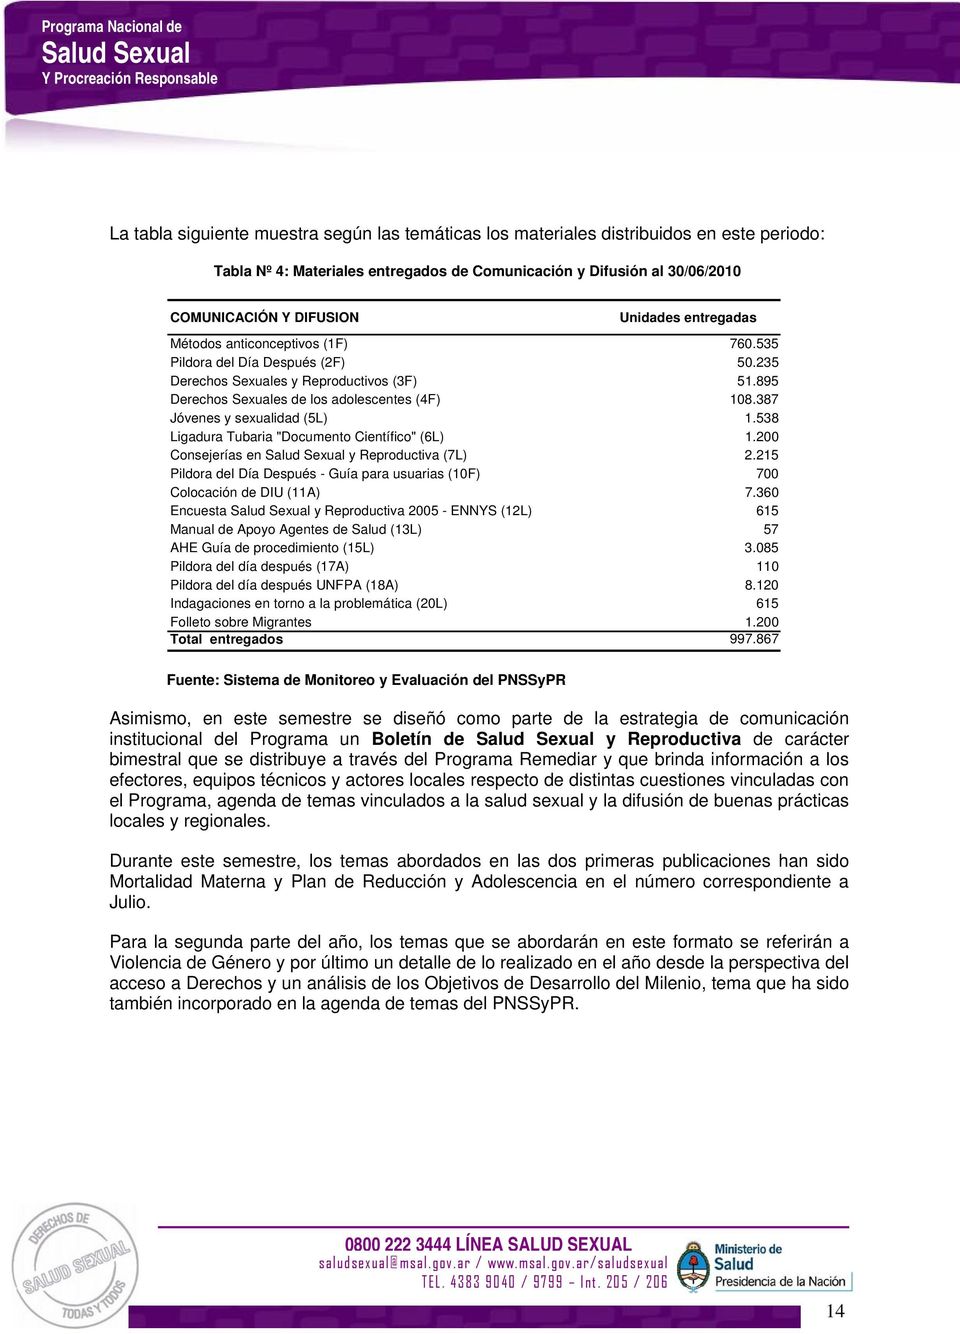 387 Jóvenes y sexualidad (5L) 1.538 Ligadura Tubaria "Documento Científico" (6L) 1.200 Consejerías en y Reproductiva (7L) 2.